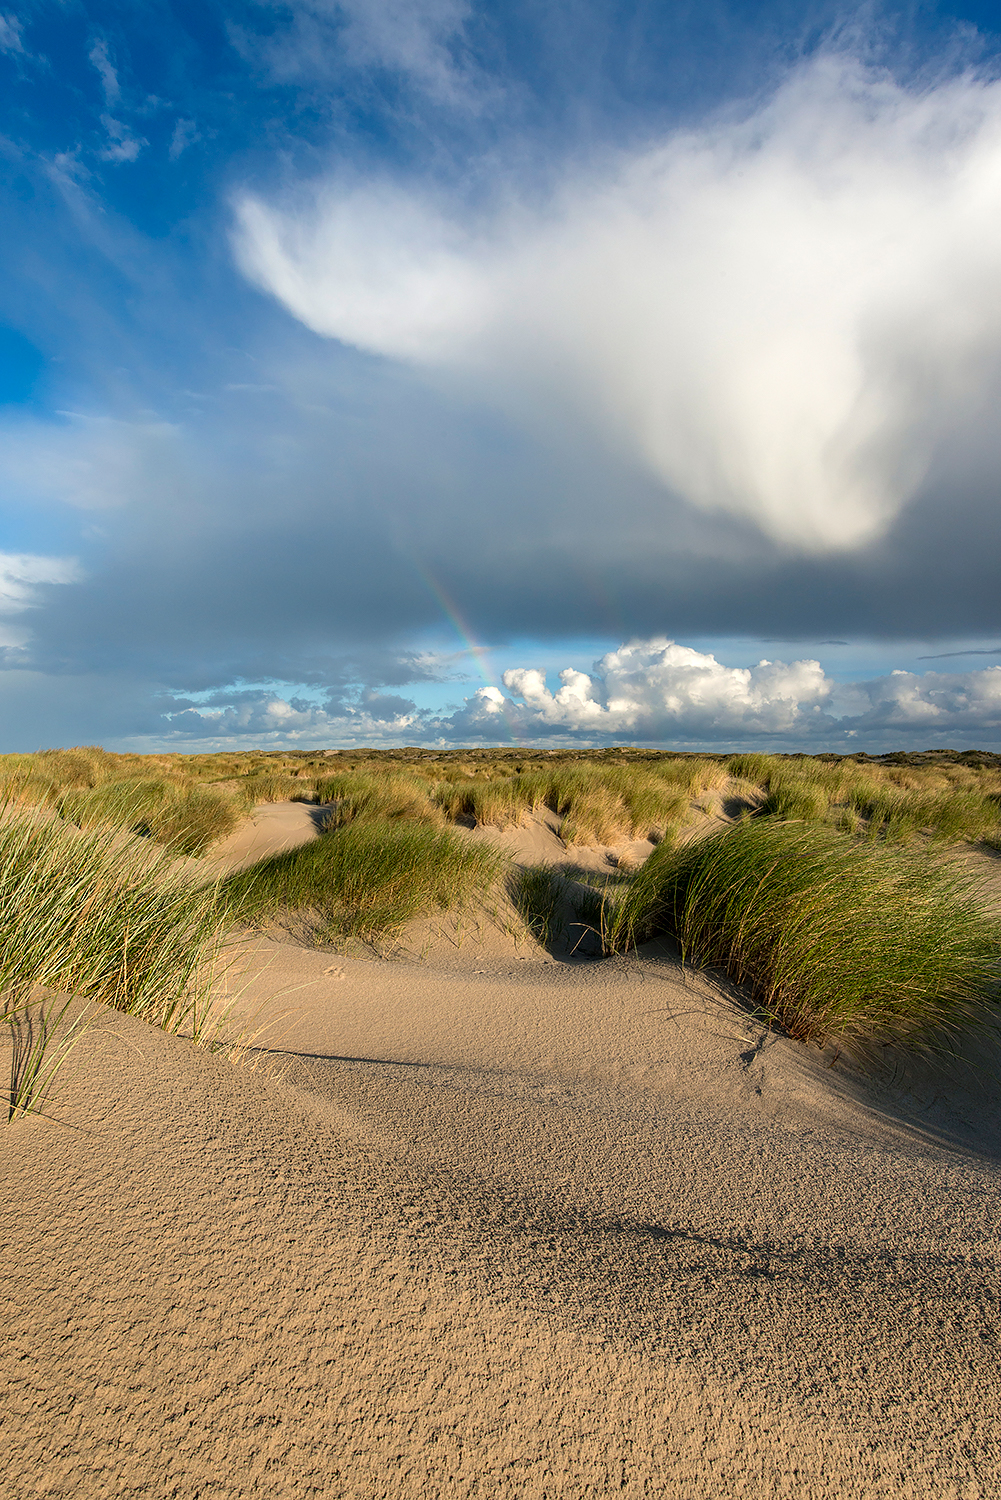 Grote wolk van regenbui boven wuivend helmgras in de zeeduinen van De Hors op het zuidpunt van Waddeneiland Texel